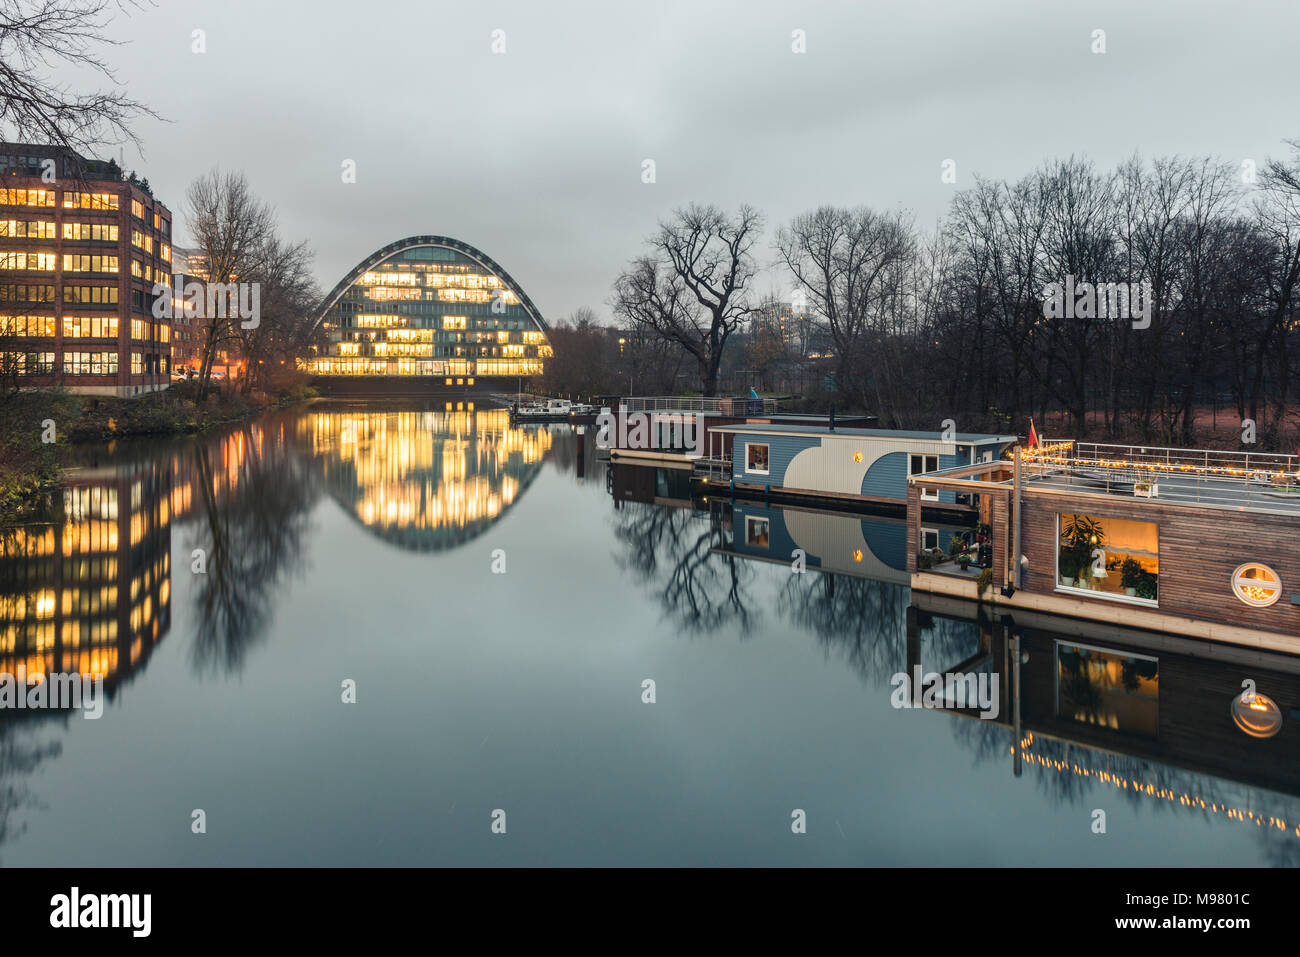 Alemania, Hamburgo, Hochwasserbassin con casa botes, Berliner Bogen en el fondo Foto de stock